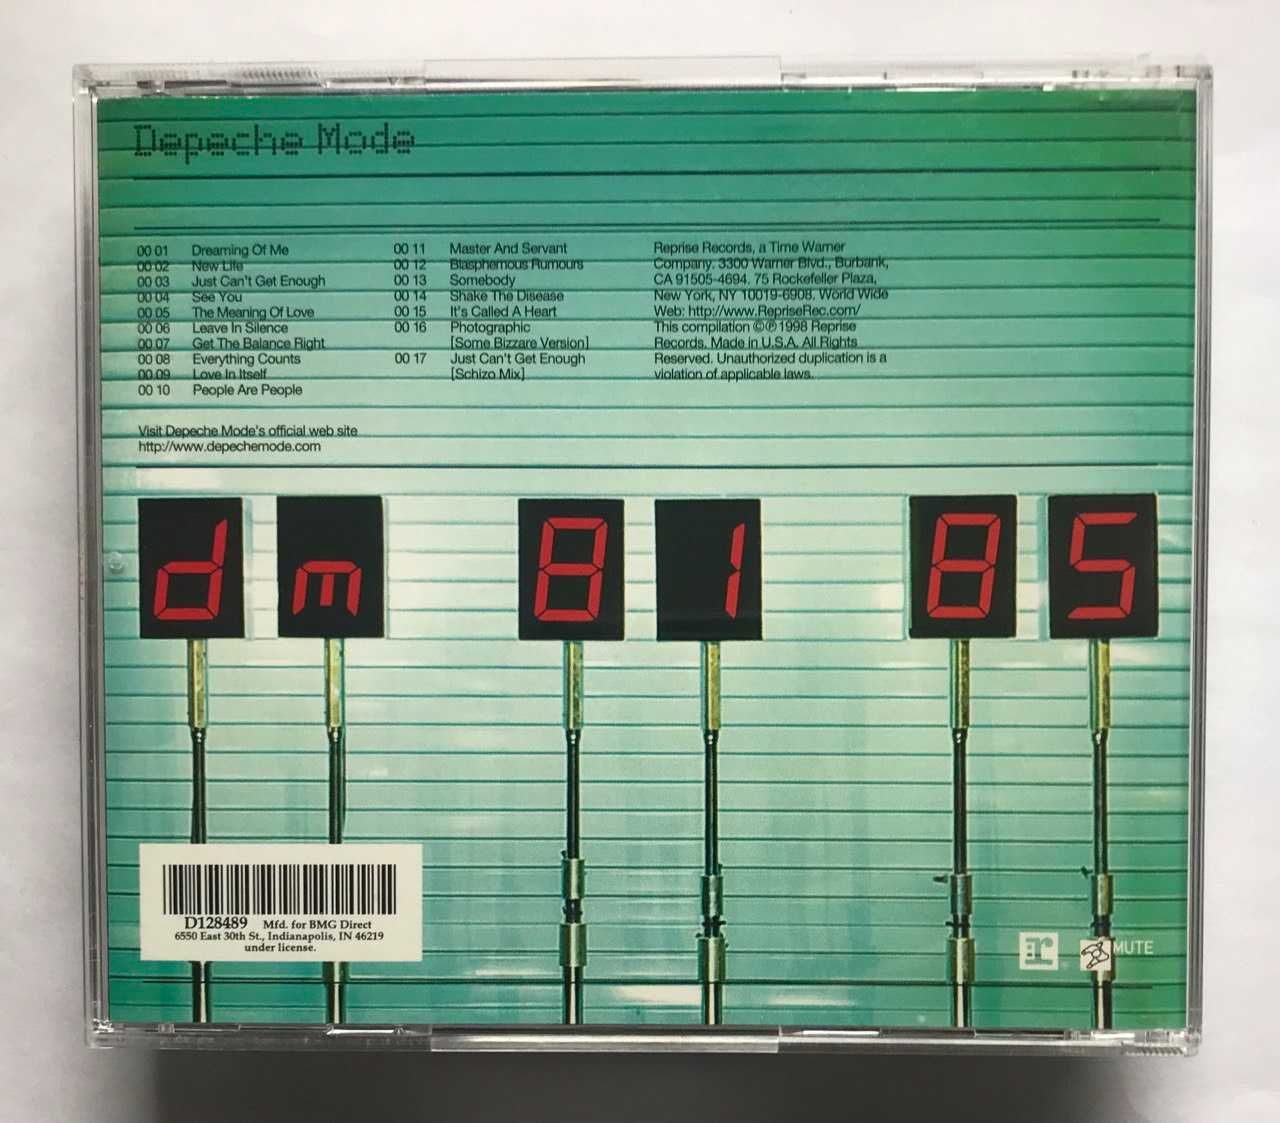 Depeche Mode – The Singles 81-85 (1998, U.S.A.)